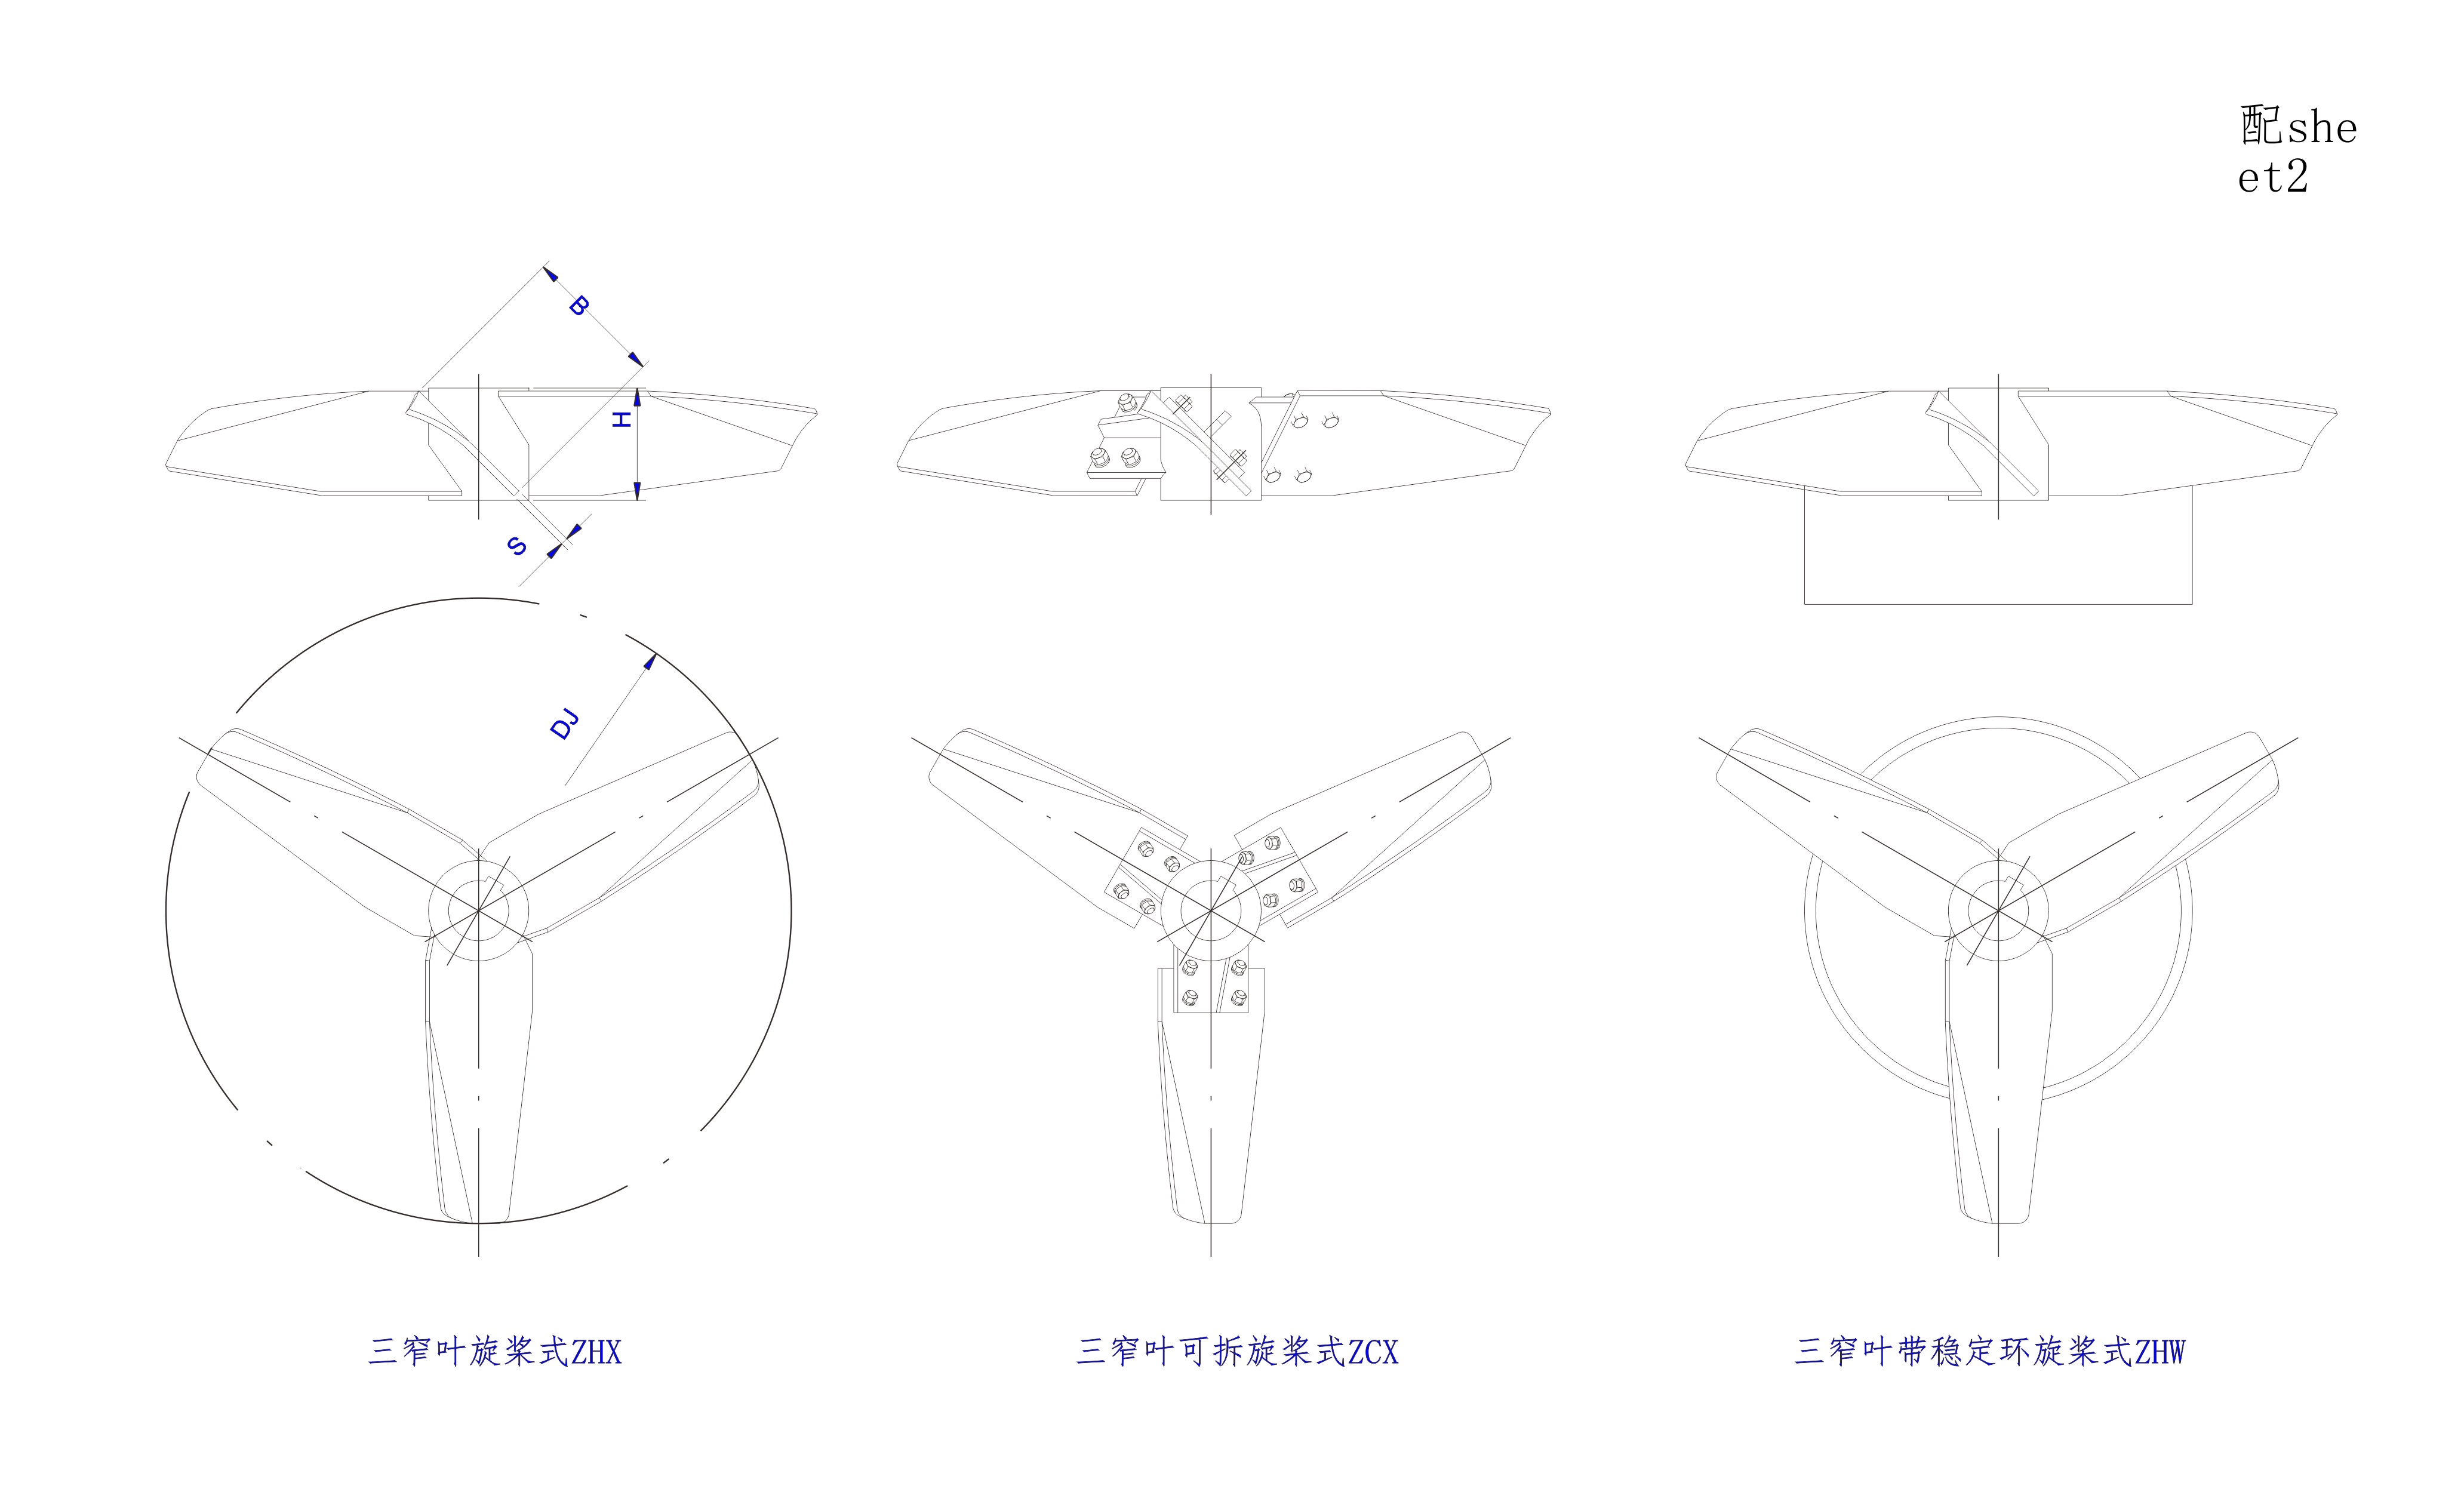   三窄葉旋槳式攪拌器設計圖